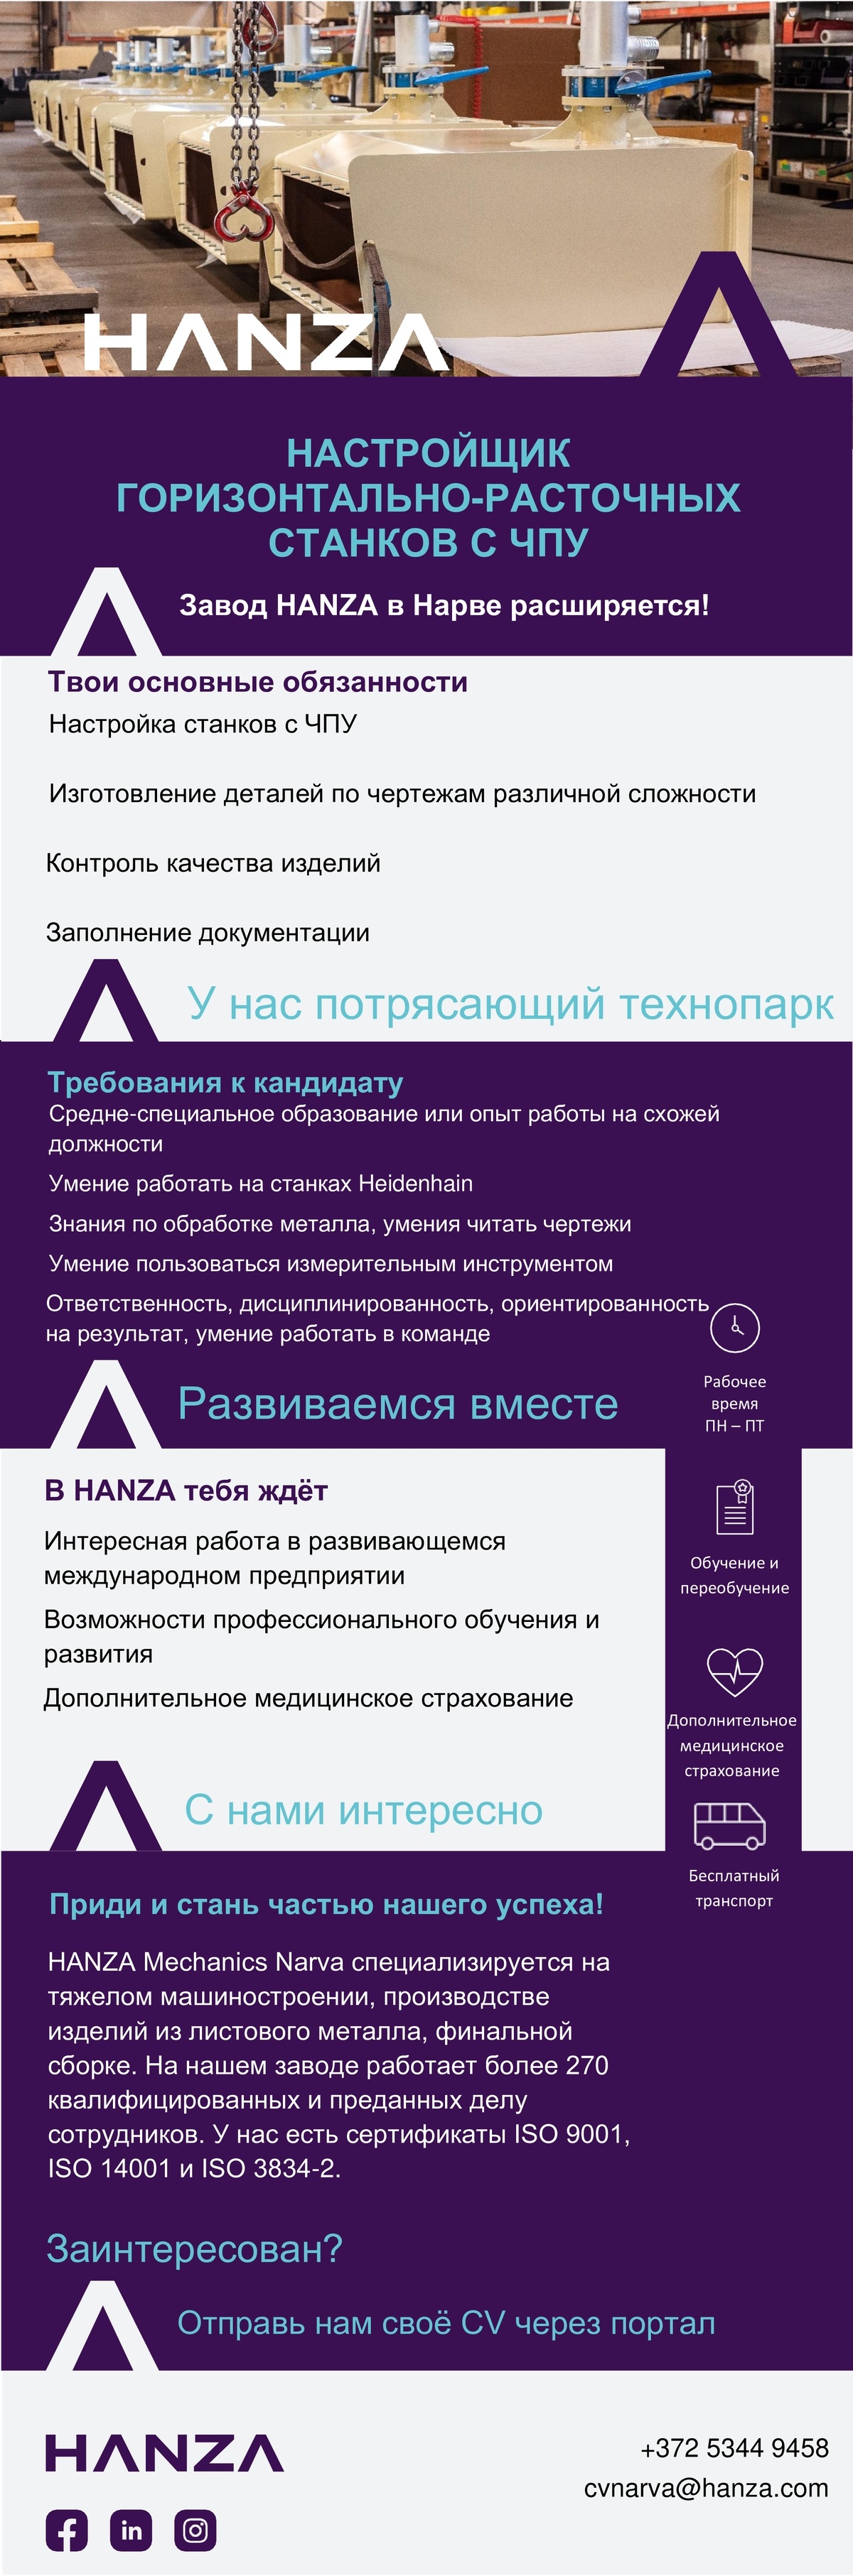 HANZA Mechanics Narva AS Настройщик горизонтально-расточных станков с ЧПУ